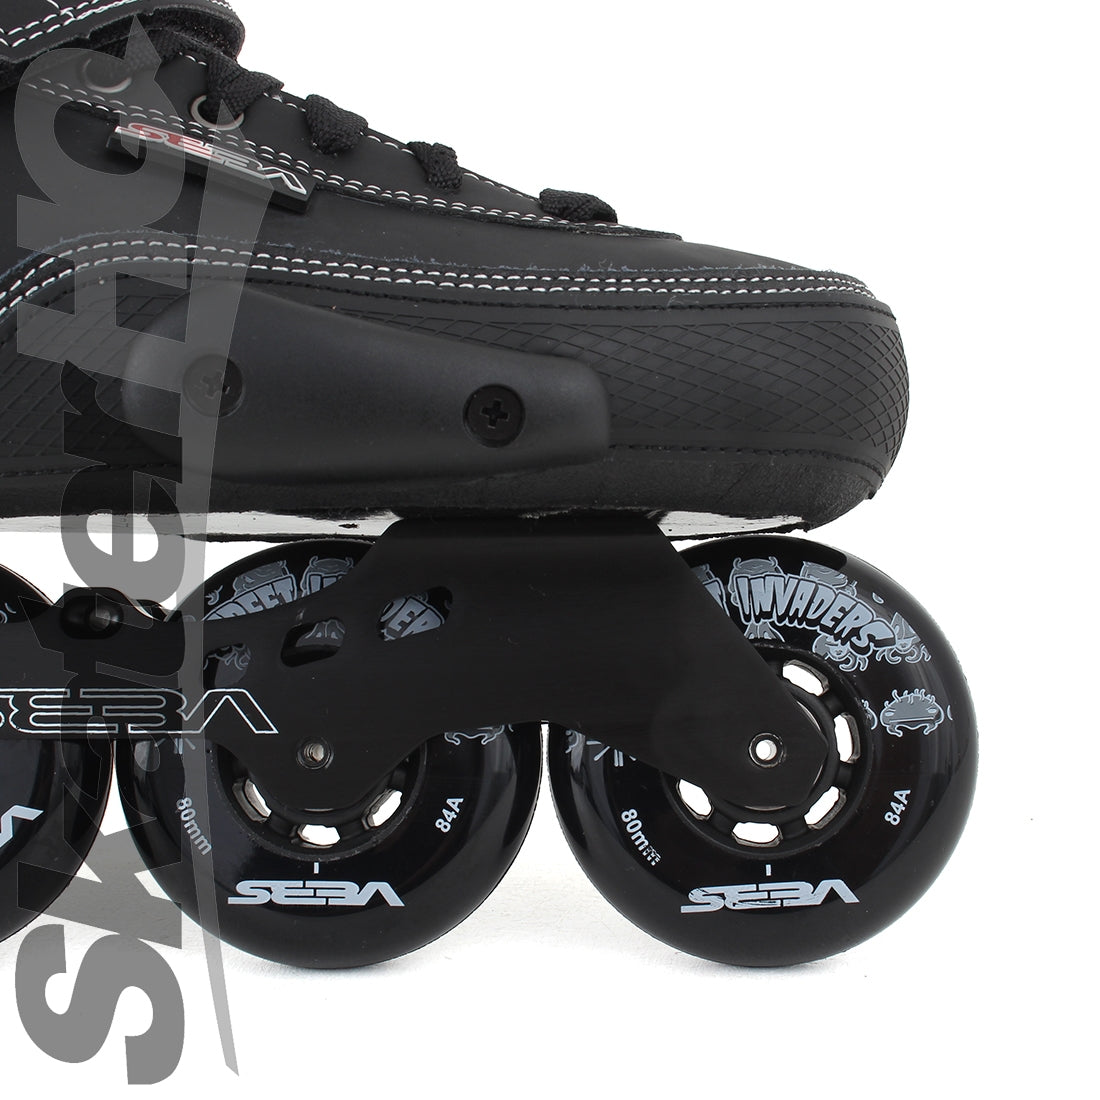 SEBA SX Black 10US EU43 Inline Rec Skates